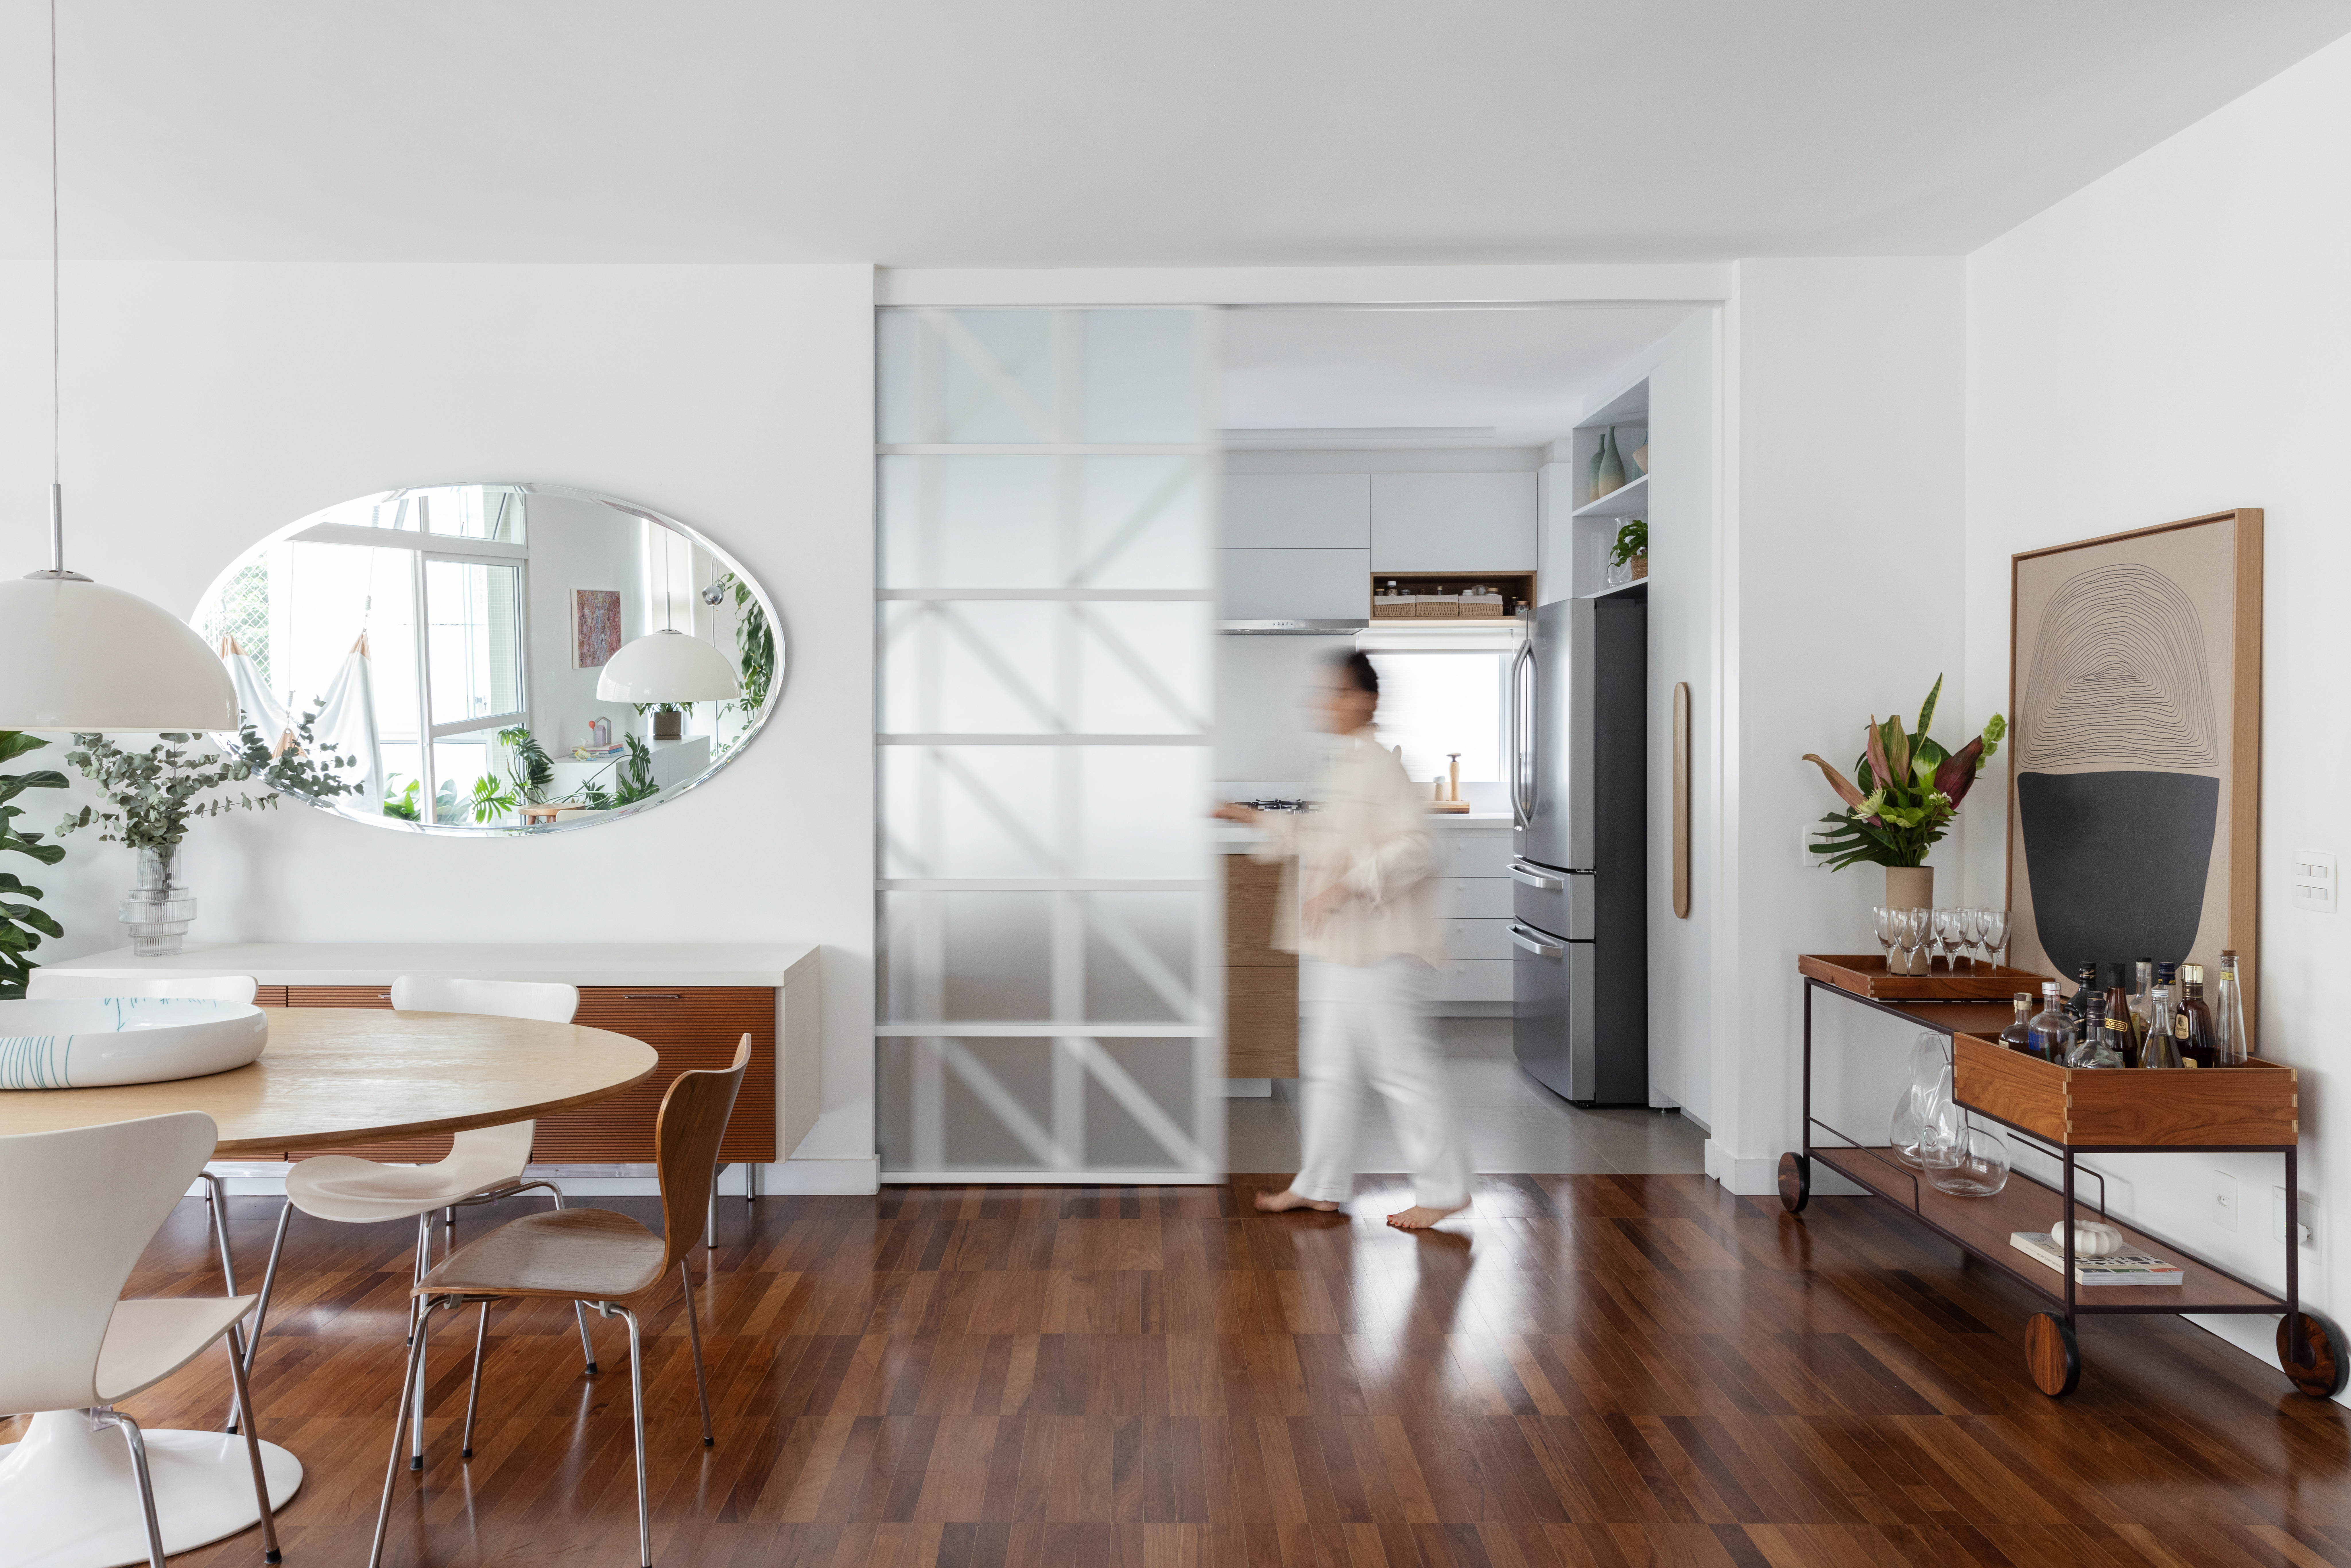 Com paleta branca, apê de 240 m² tem porta de correr inspirada em biombos. Projeto de Lucia Manzano. Na foto, sala, piso de madeira, porta de vidro de correr.